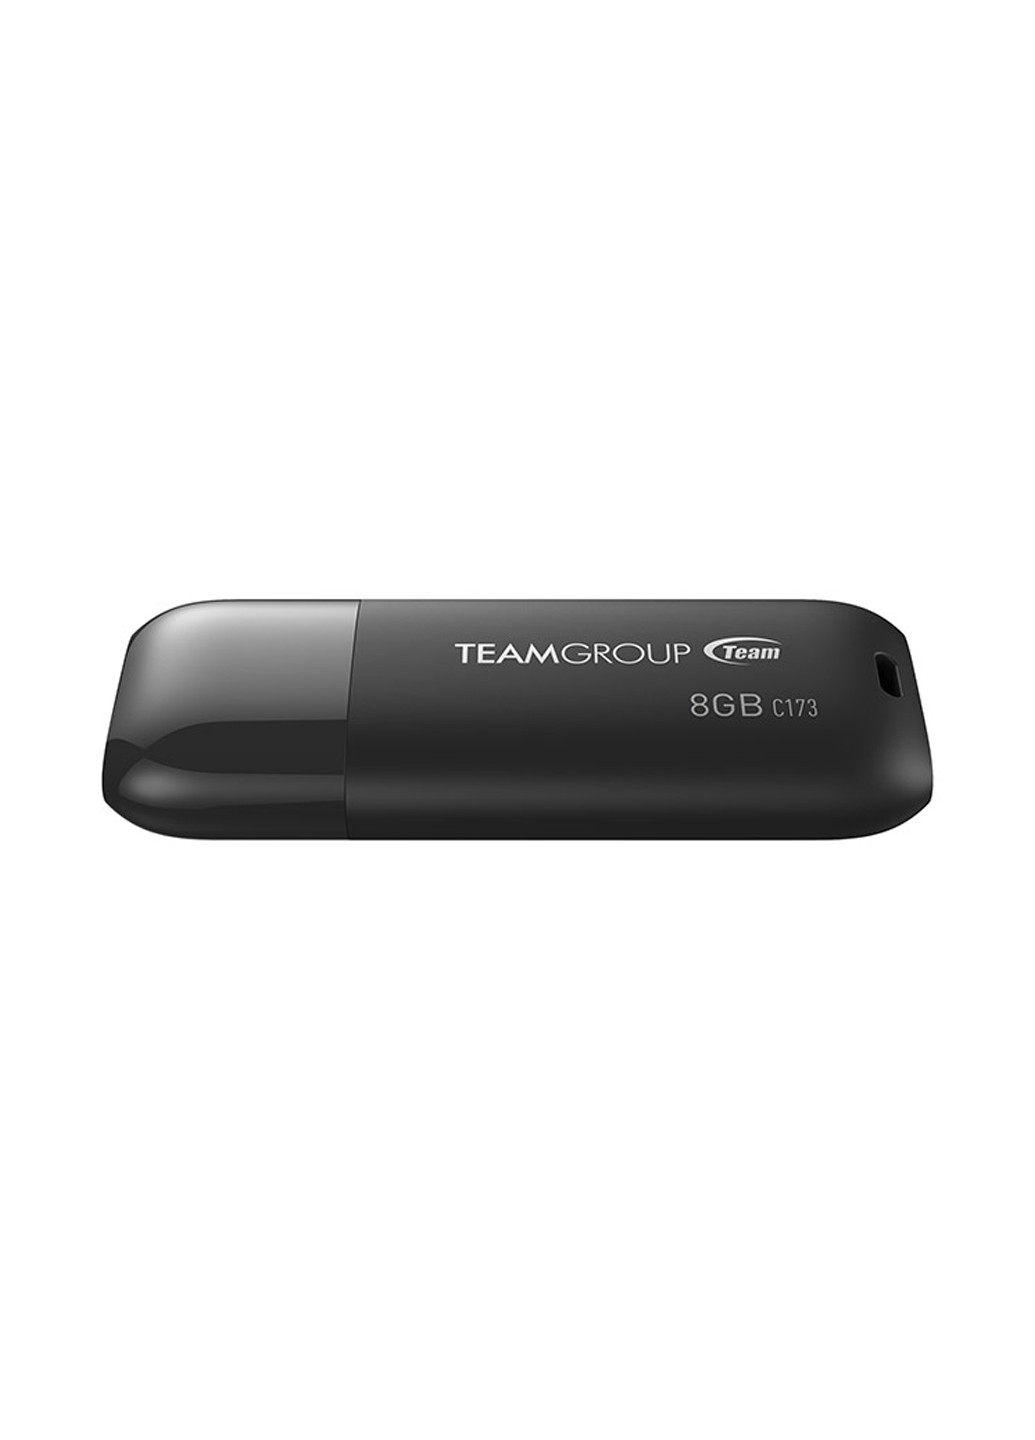 Флеш пам'ять USB C173 8GB Pearl Black (TC1738GB01) Team флеш память usb team c173 8gb pearl black (tc1738gb01) (134201657)